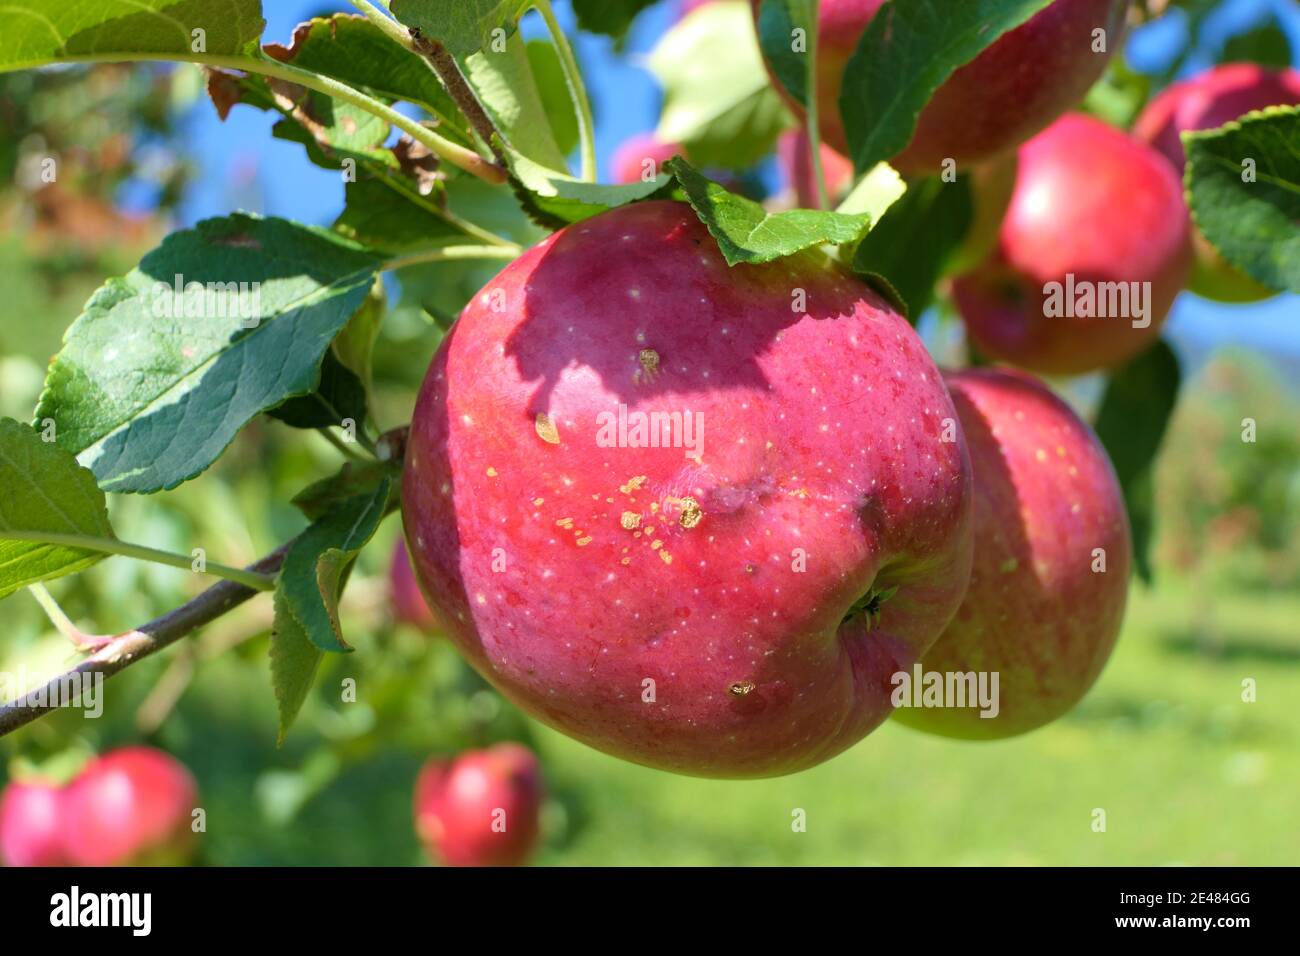 Grosse pomme juteuse rouge sur la branche avec plantation cultivée dans arrière-plan Banque D'Images